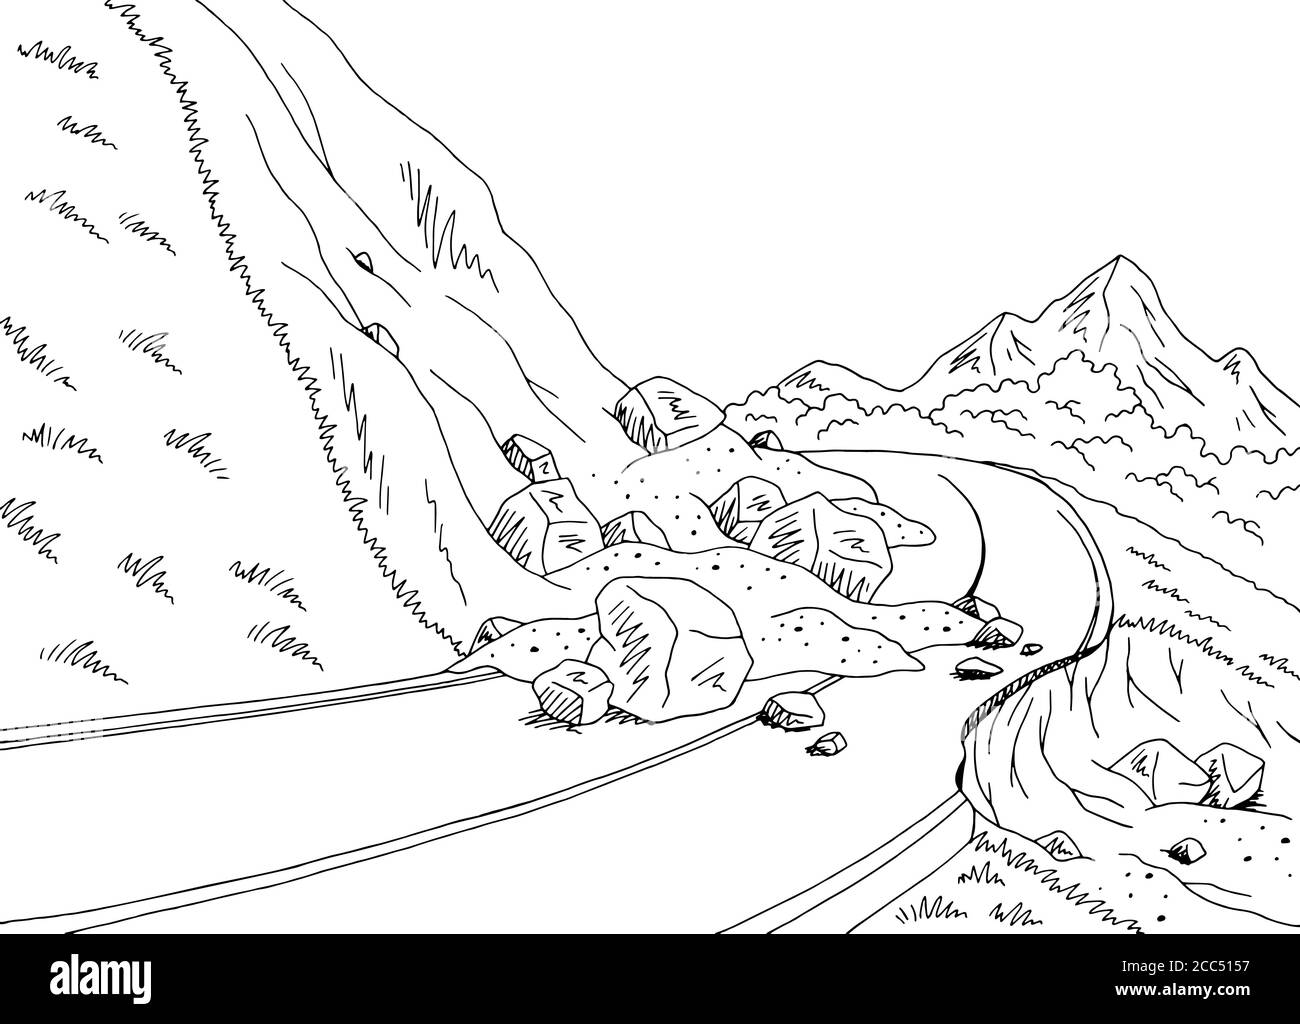 Landslide graphic black white mountains landscape sketch illustration vector Stock Vector